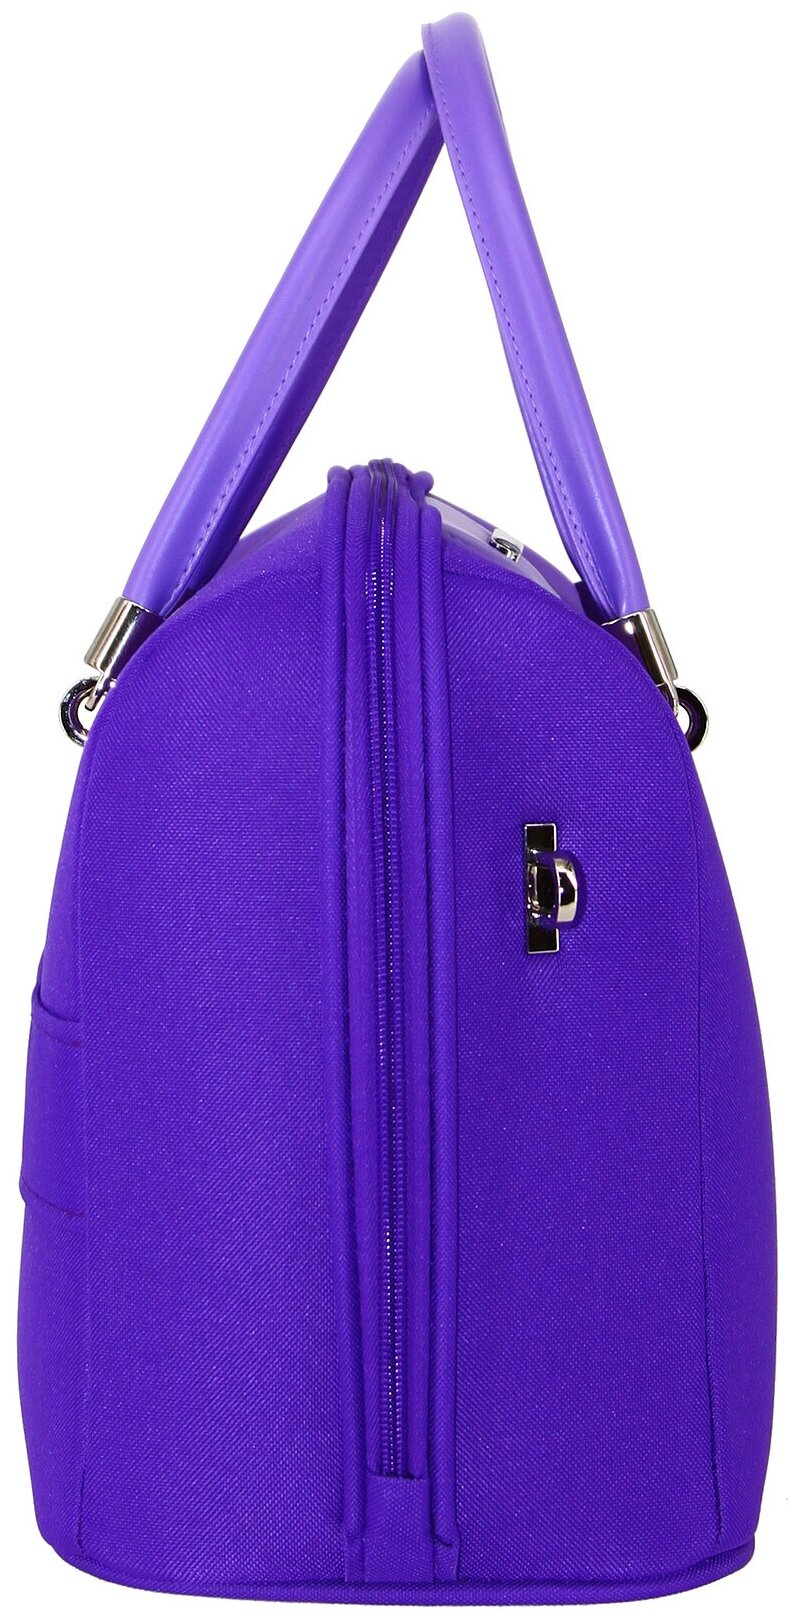 Дорожная сумка с ремнем на ручку чемодана Рион+ (RION+) / ручная кладь для самолета / саквояж , R240, Тканевая, 20 литров, фиолетовый - фотография № 2